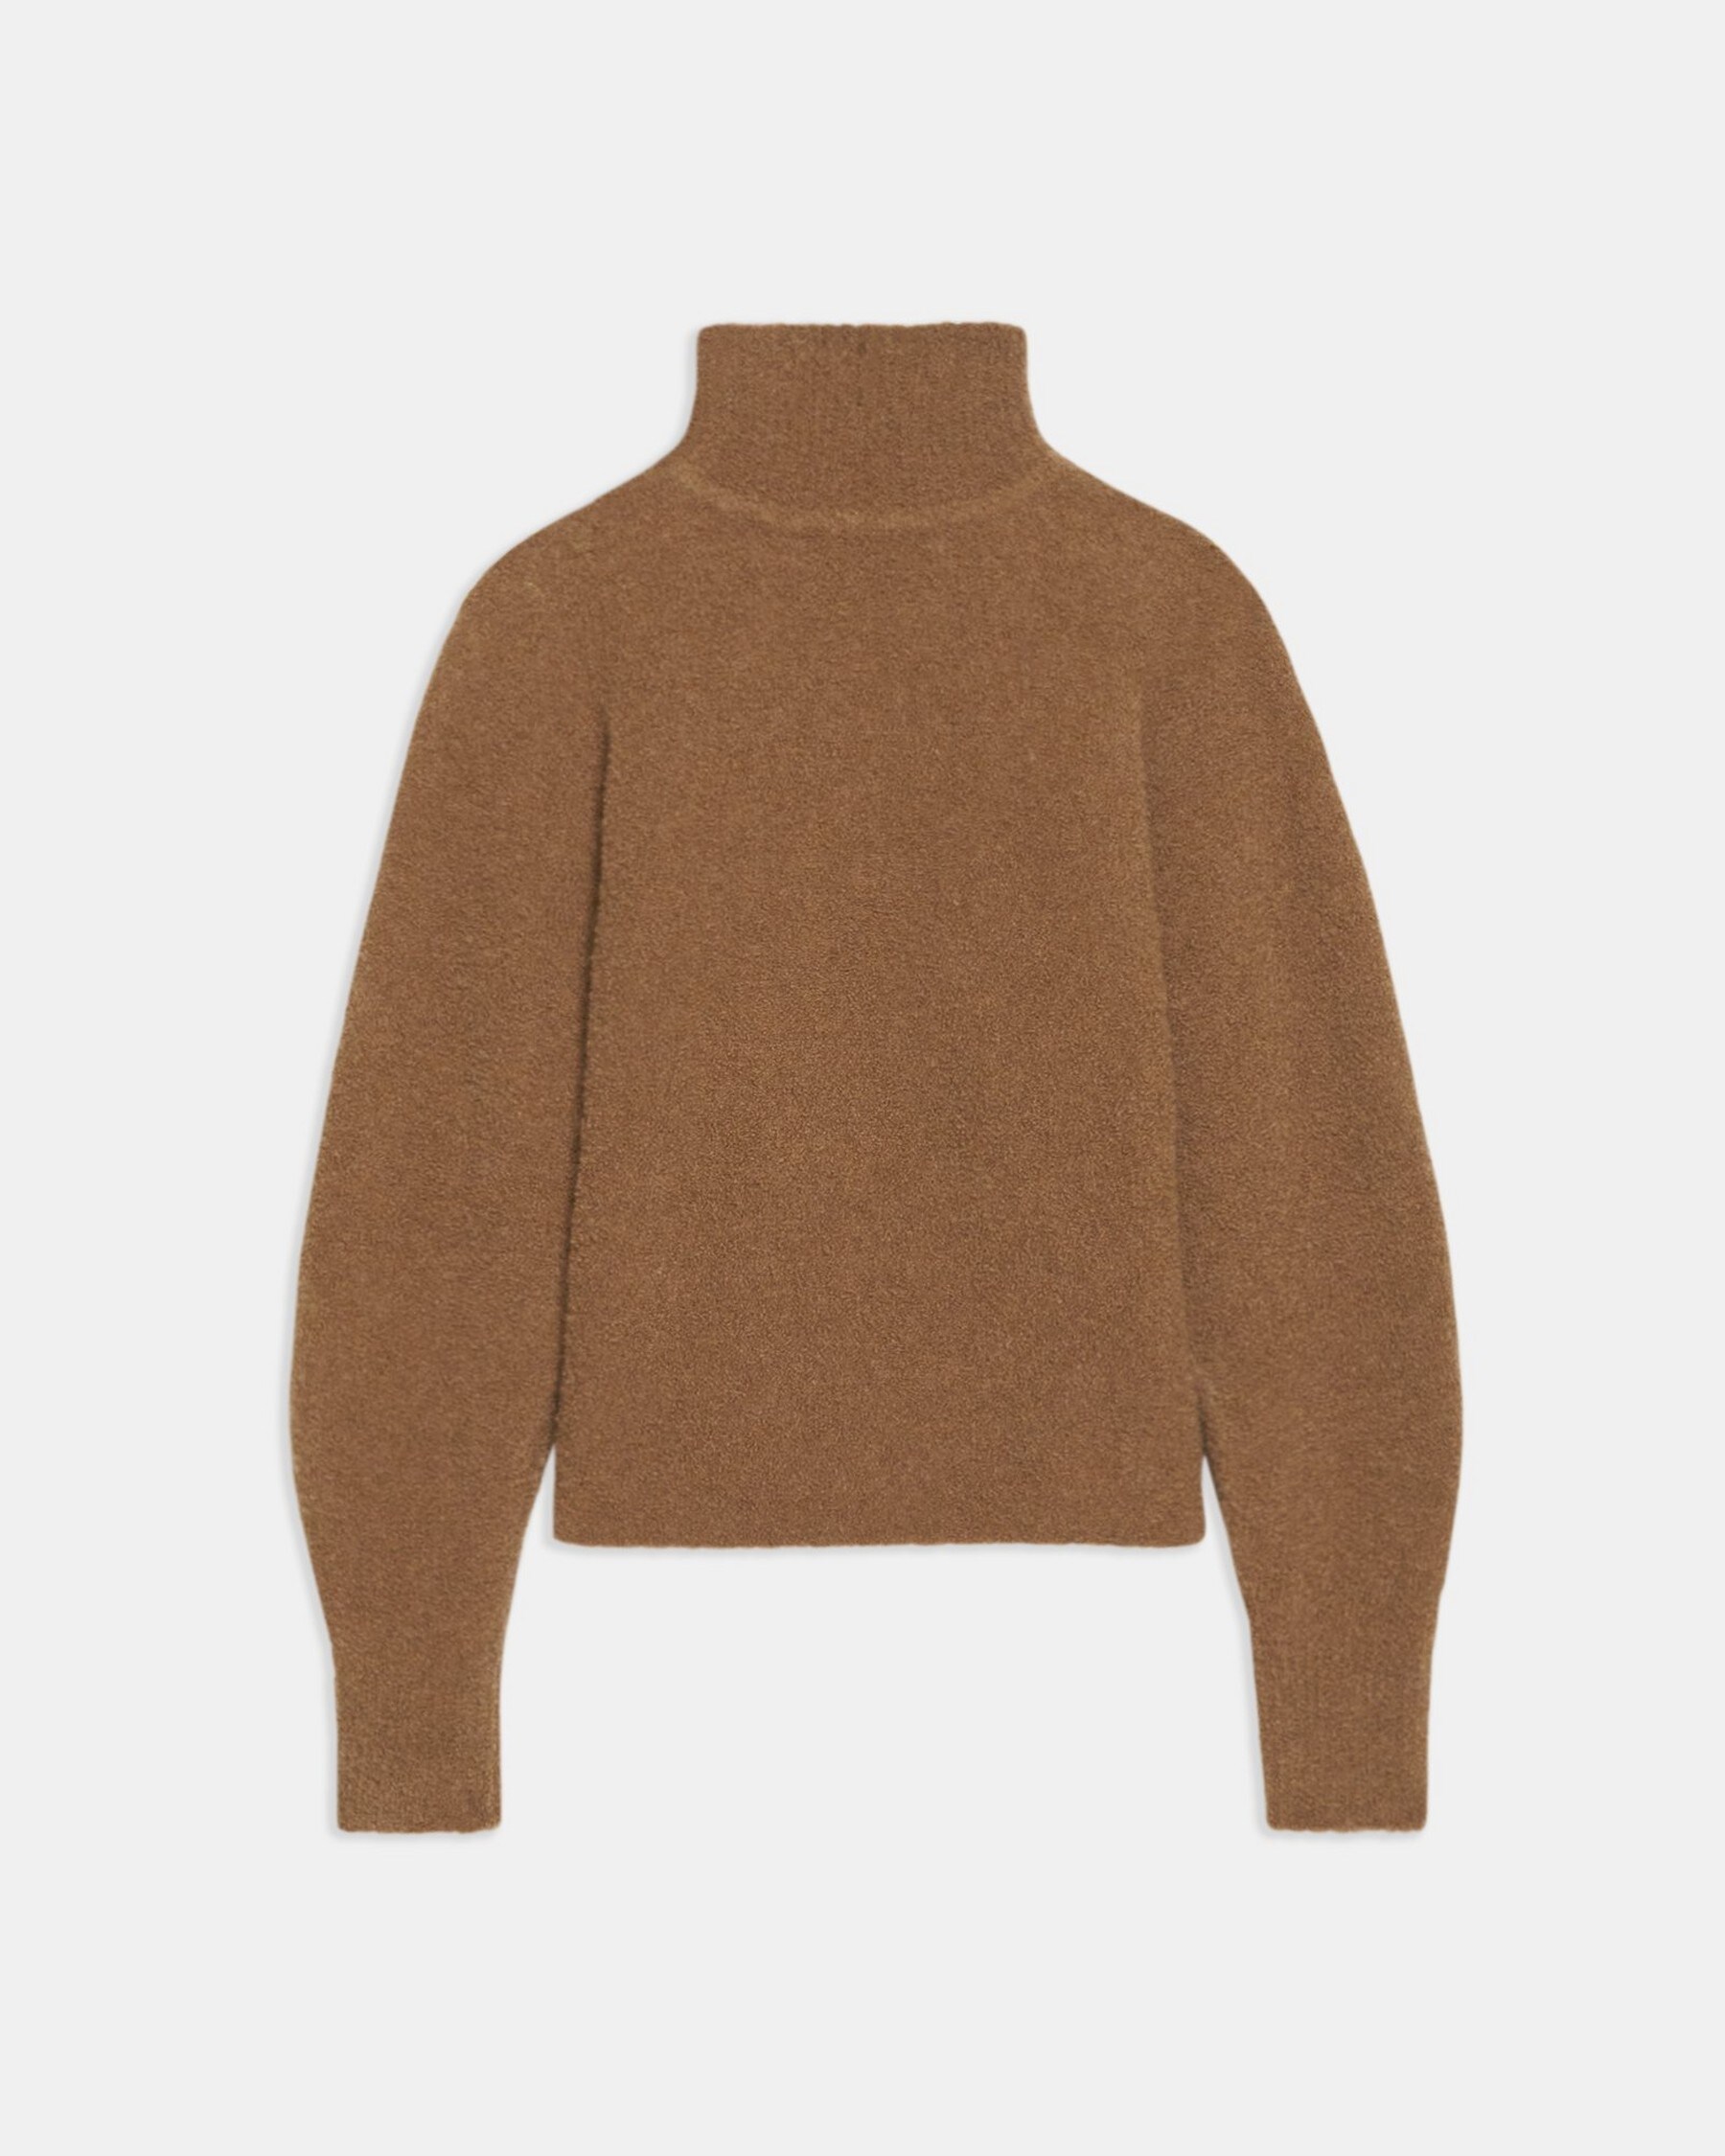 Oversized Turtleneck Sweater in Wool Bouclé